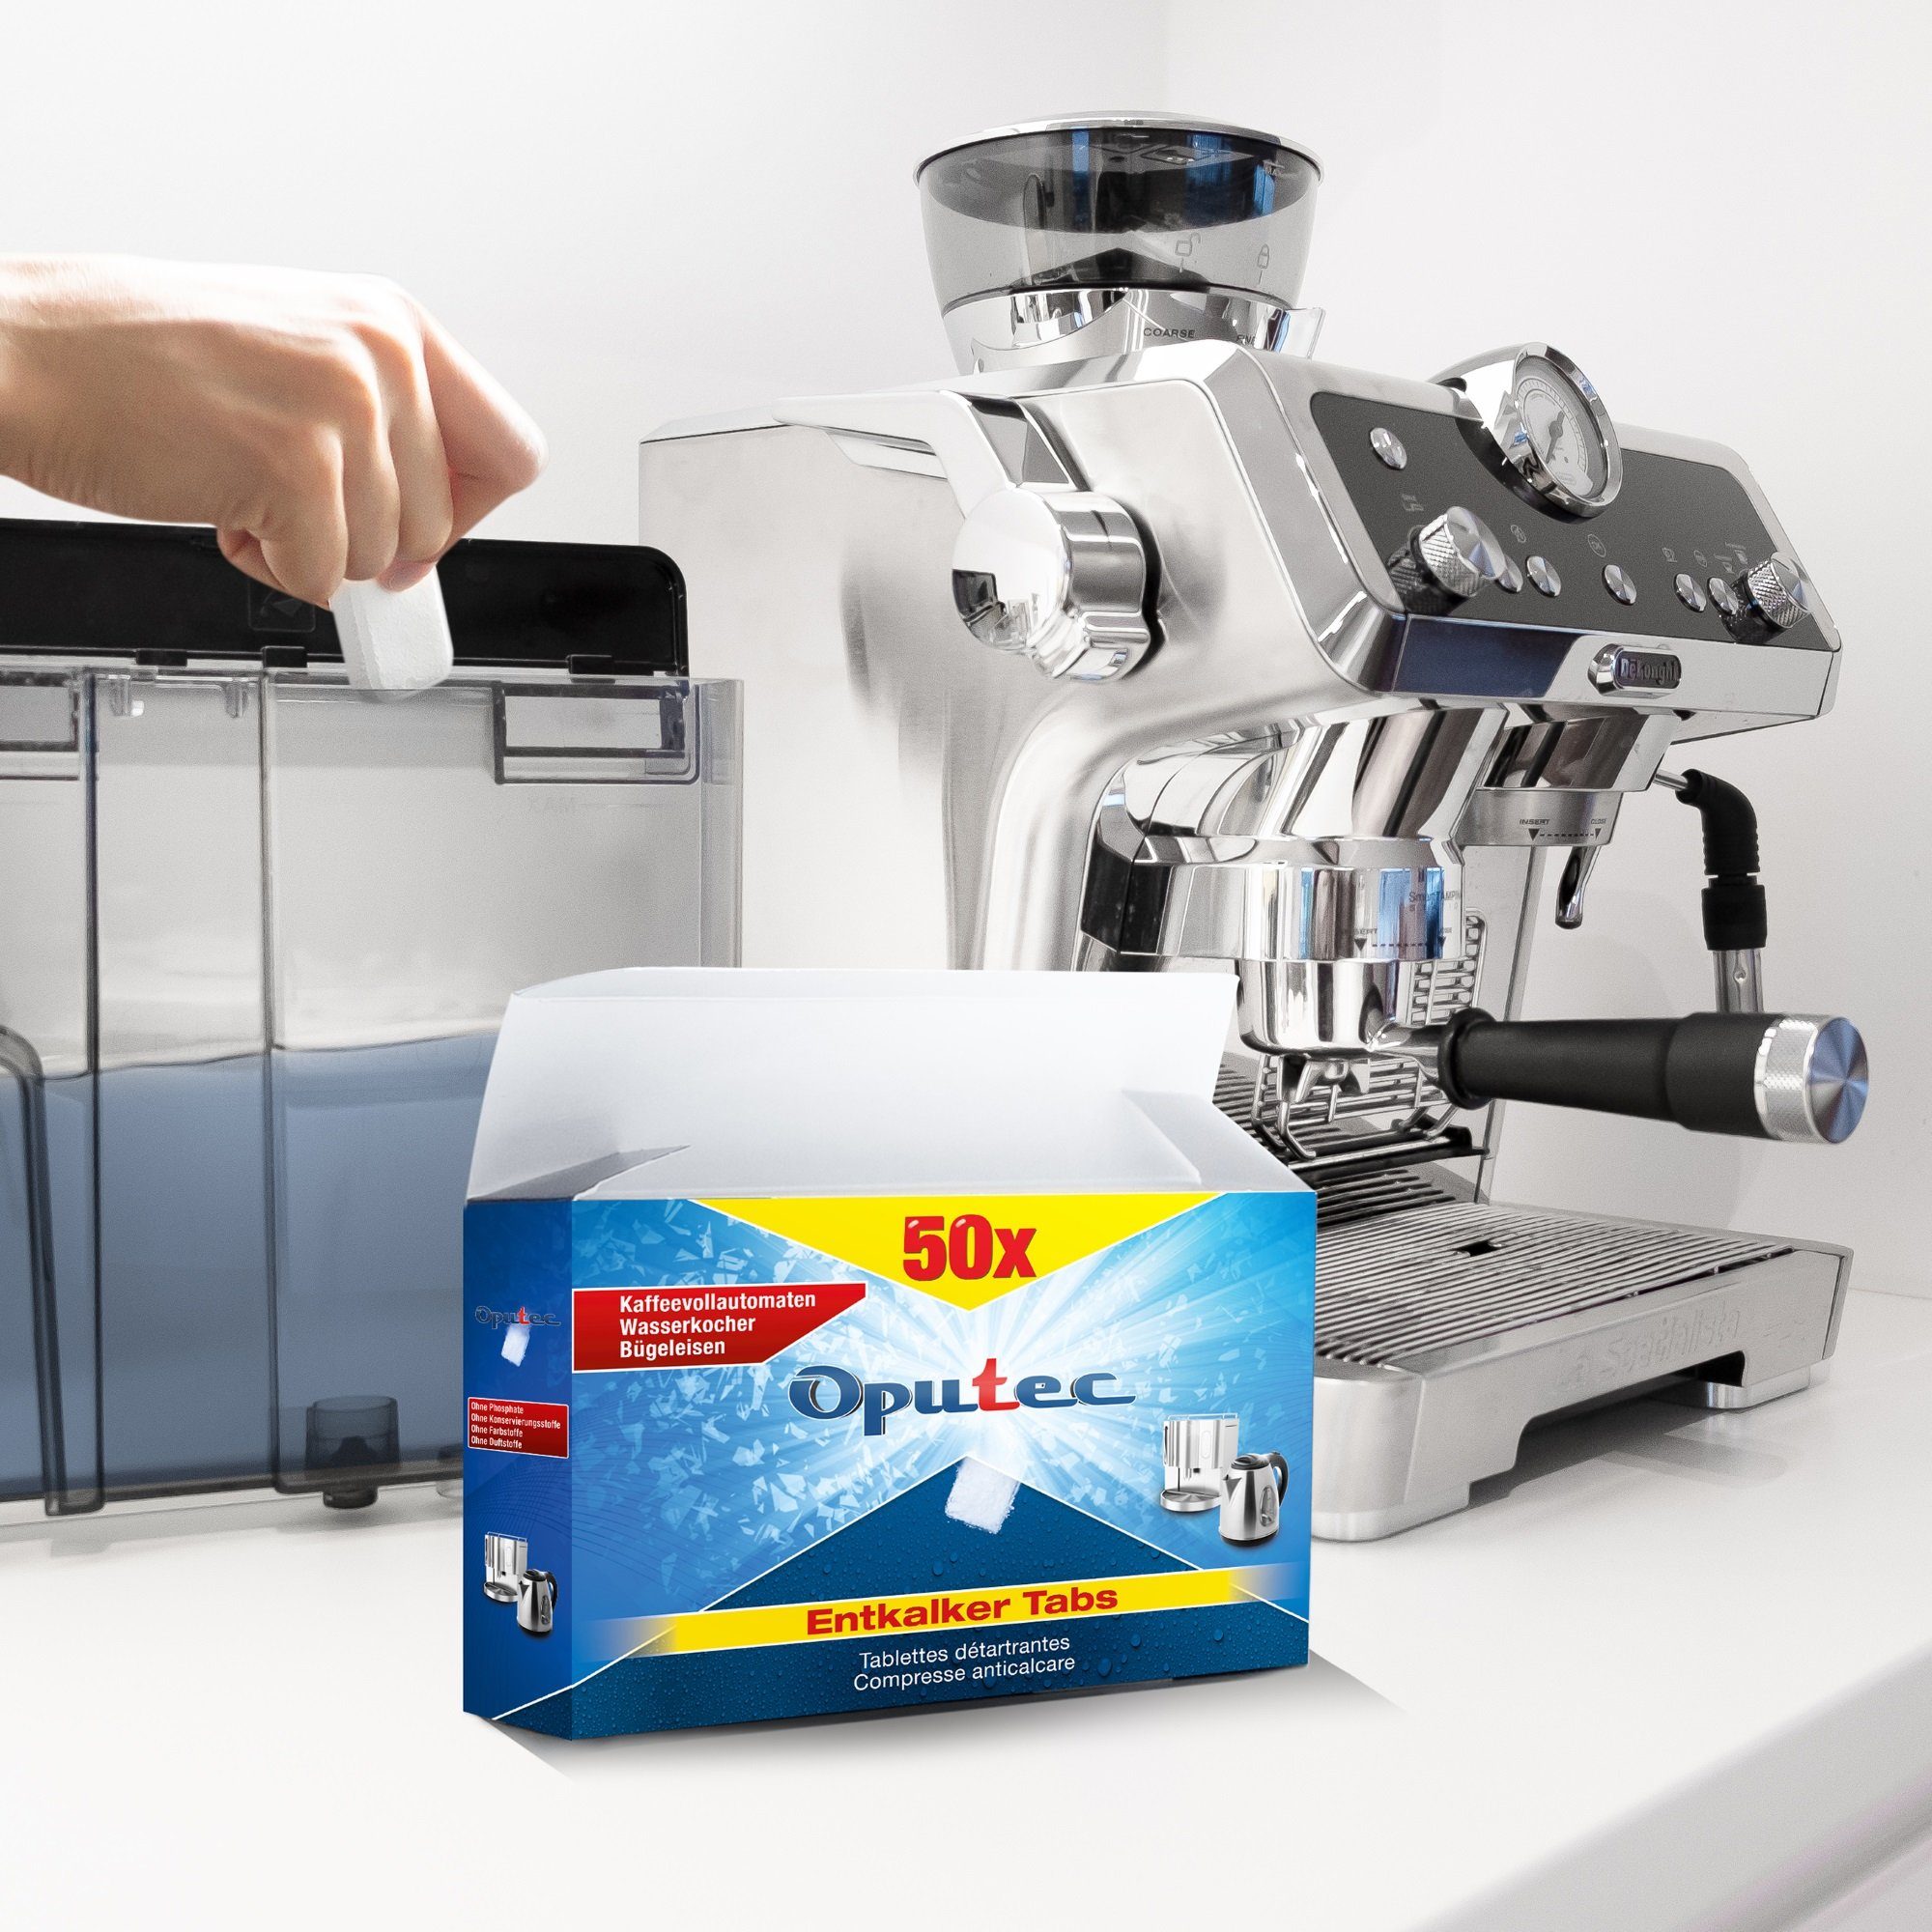 Oputec 50x Kaffeevollautomaten Entkalkungstabletten Entkalker Tabs Entkalkungstabletten